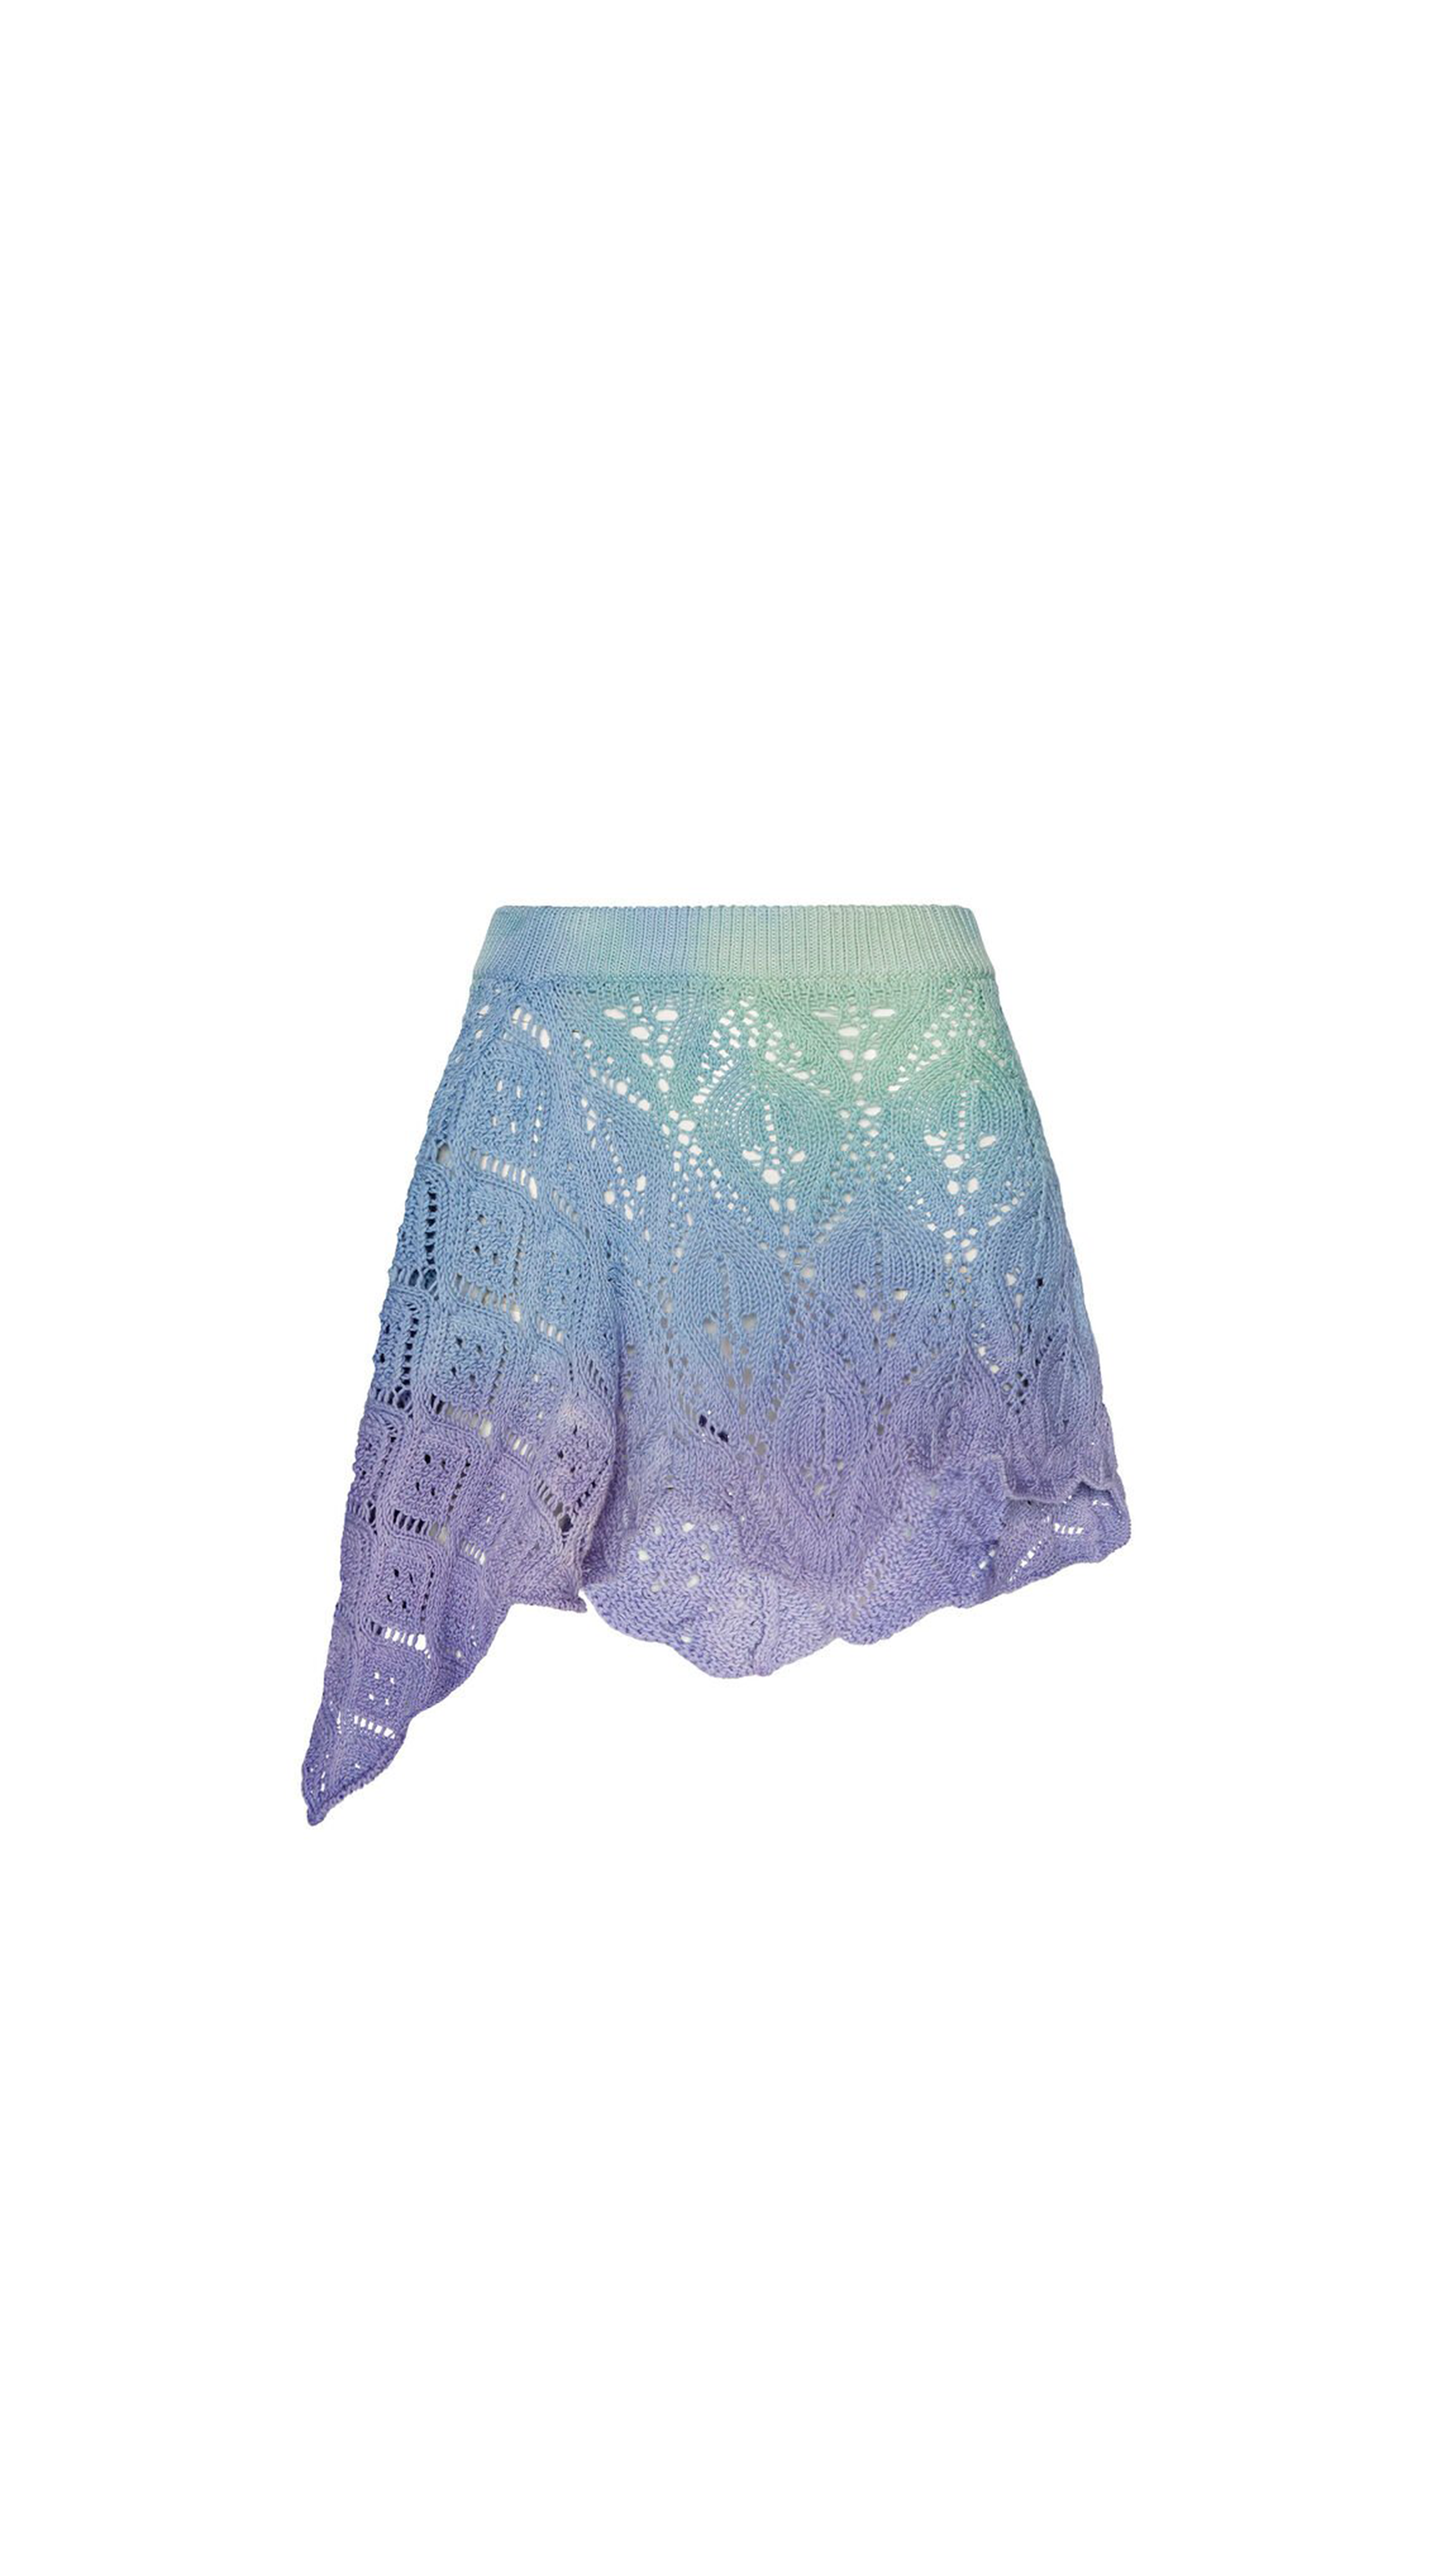 Asymmetric Mini Skirt in Tie-dye Cotton Crochet - Blue / Purple